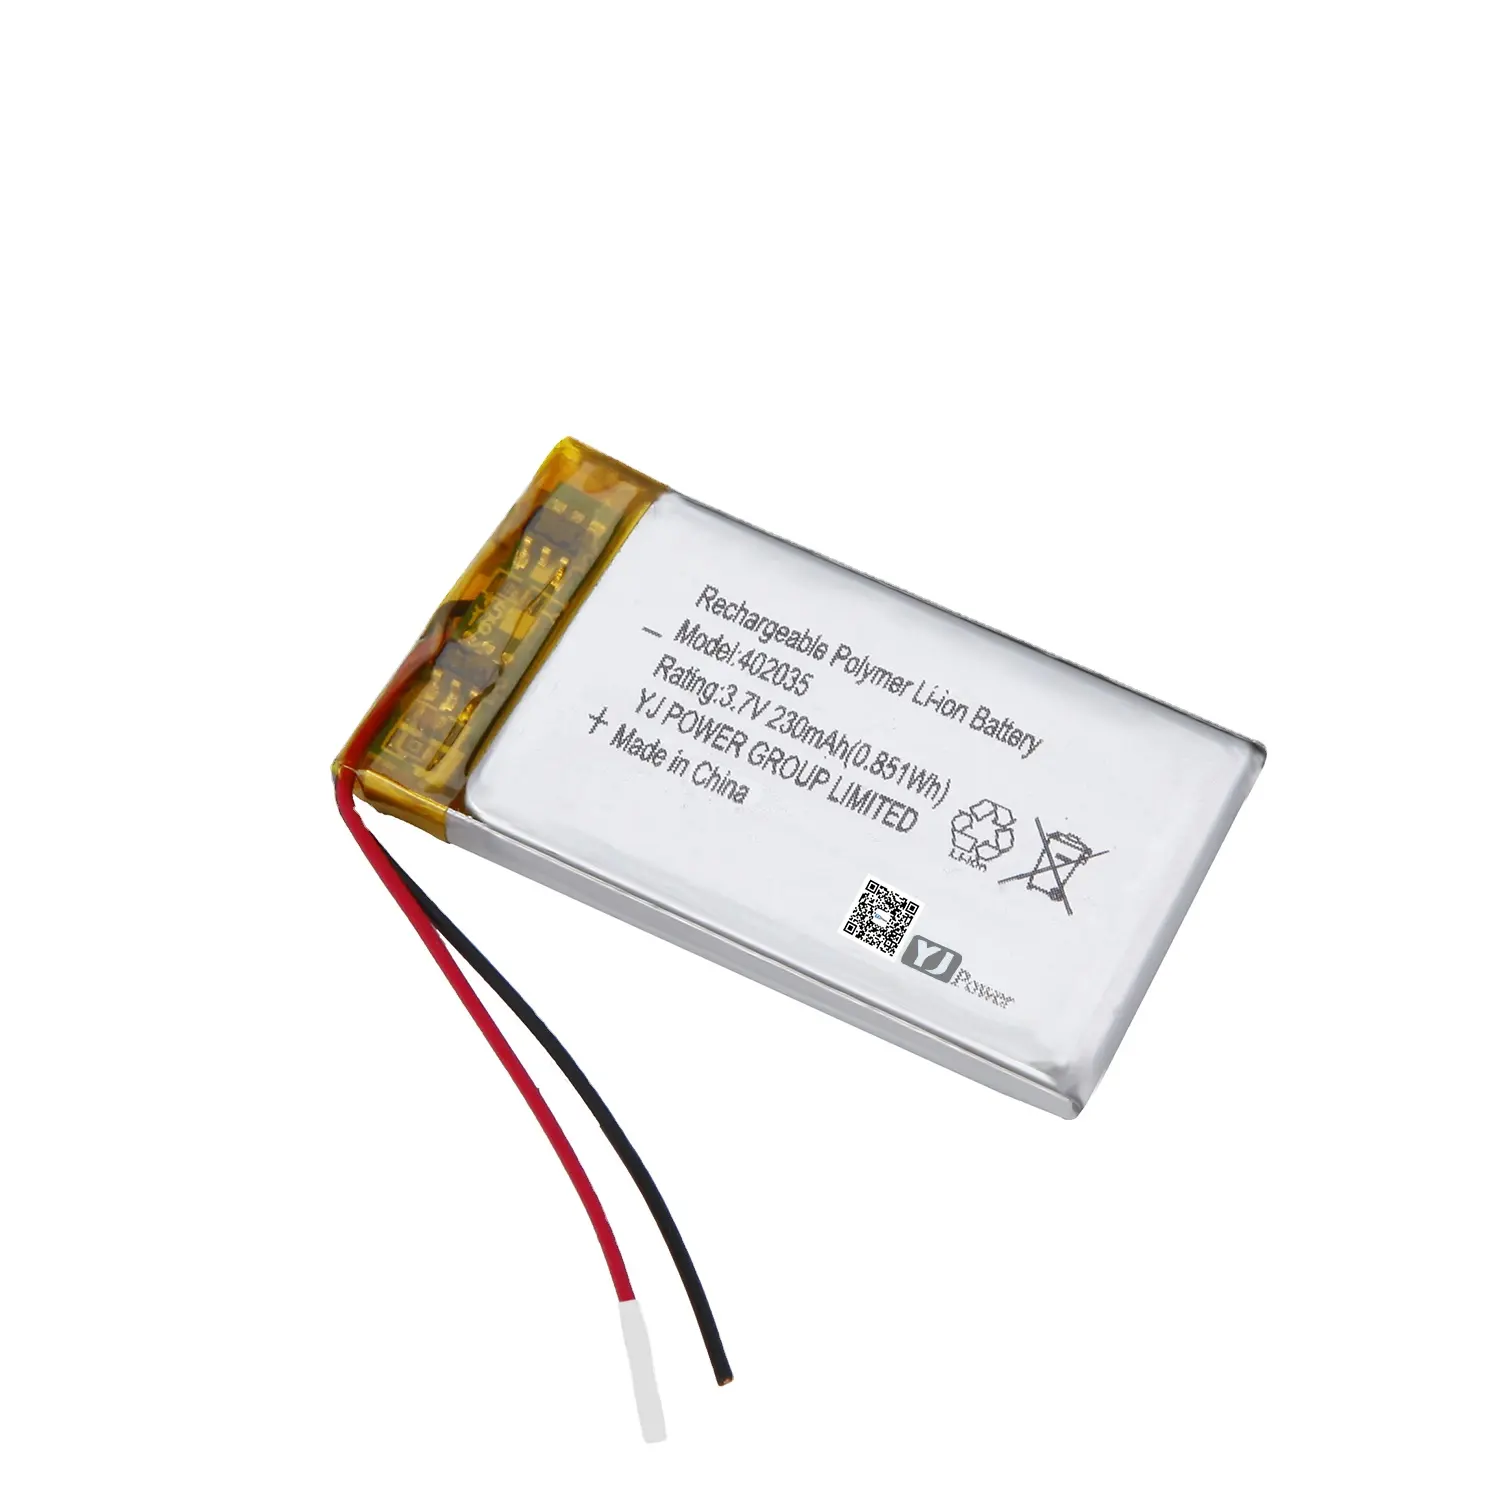 Yj kc bateria de lítio recarregável, certificada 3.7v 402035 300mah lipo para gravador de áudio mp3